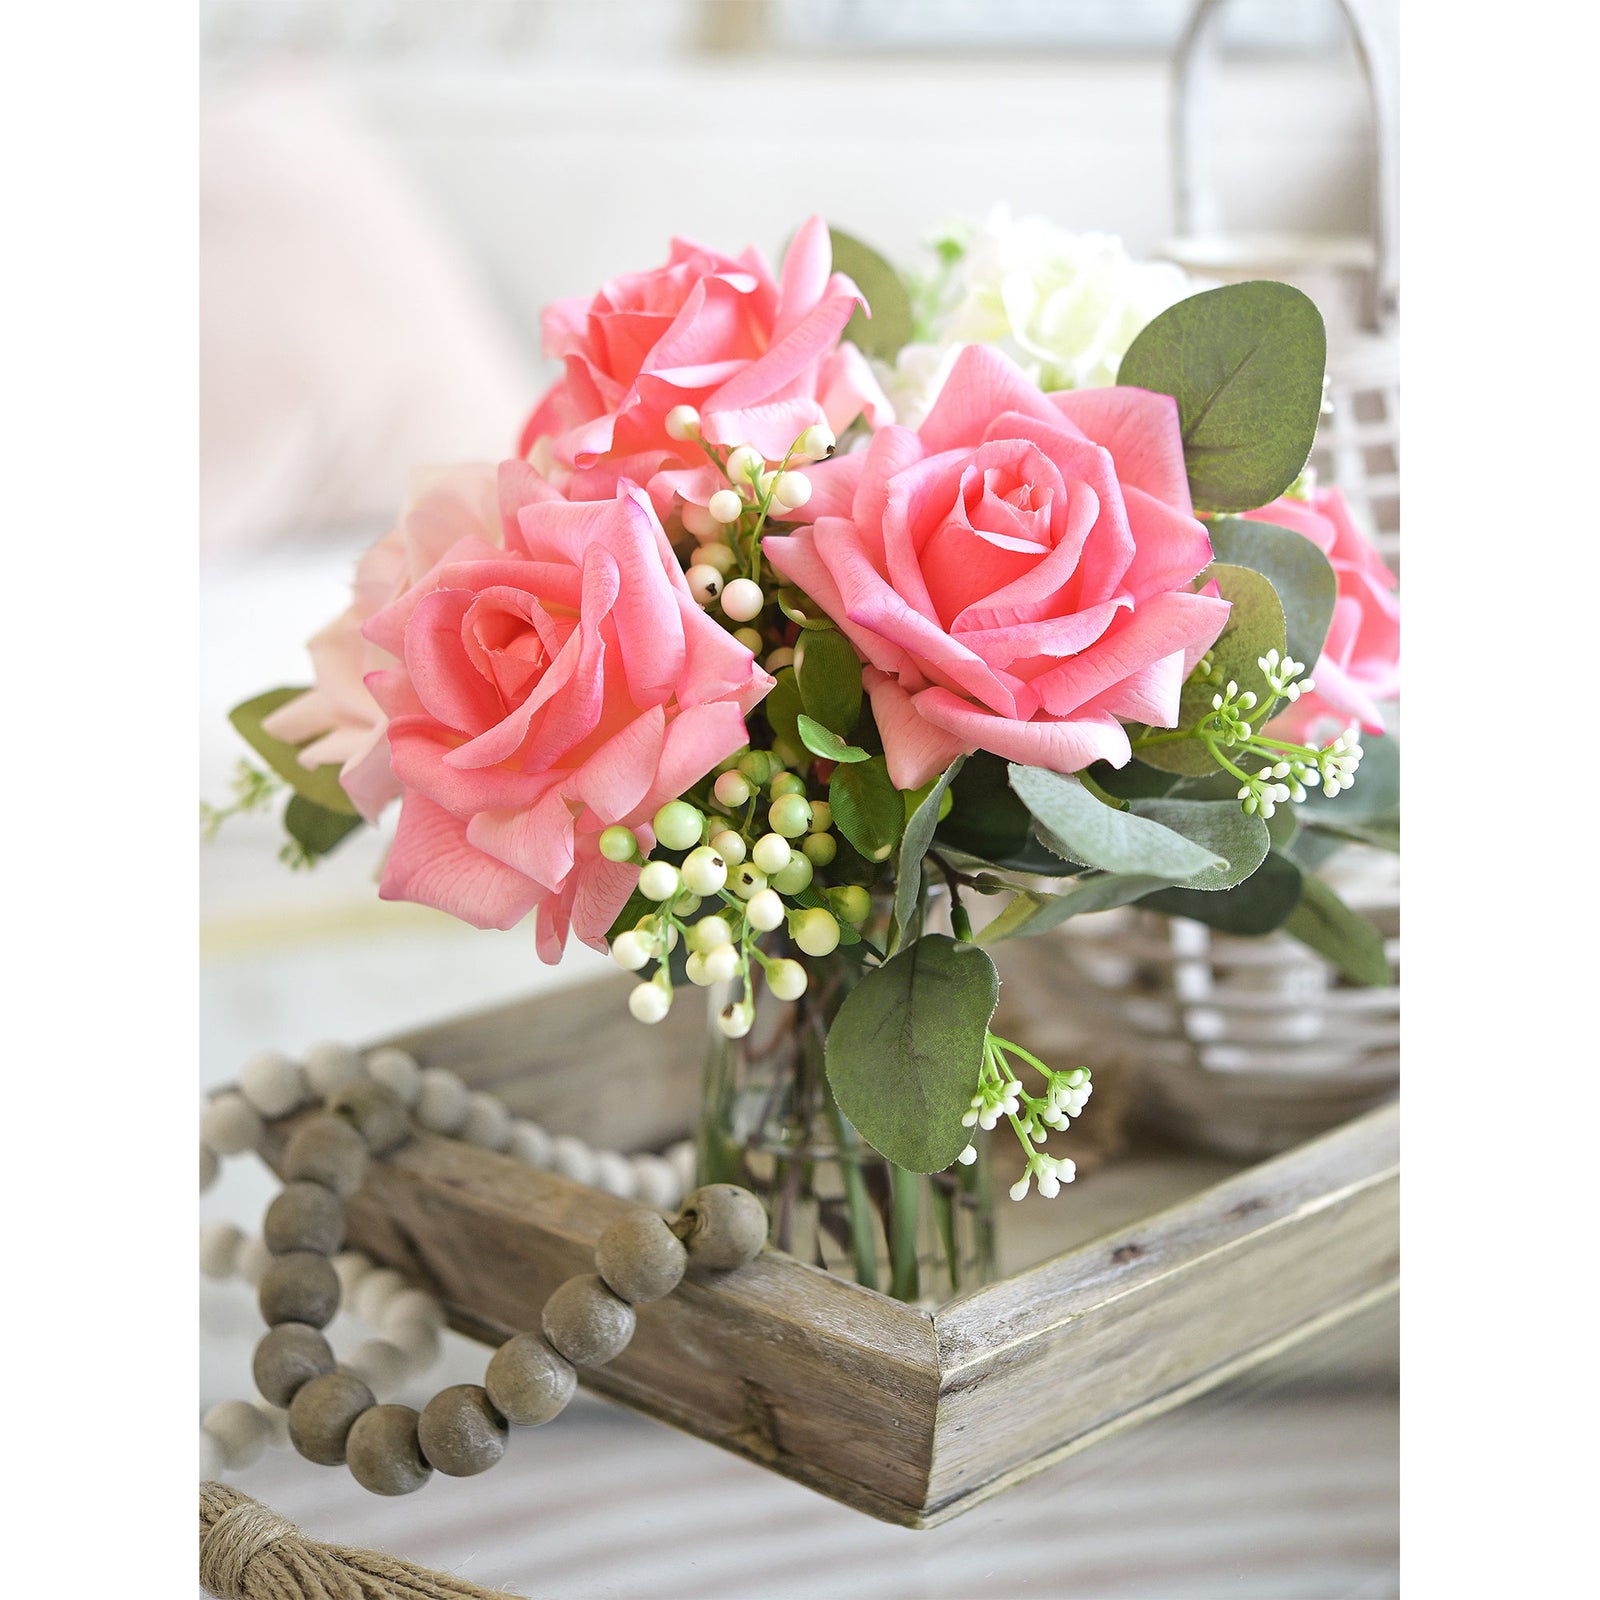 FiveSeasonStuff Watermelon Pink Real Touch Garden Rose Artificial Flowers Wedding, Bridal, Home Décor 5 Stems 9.8"